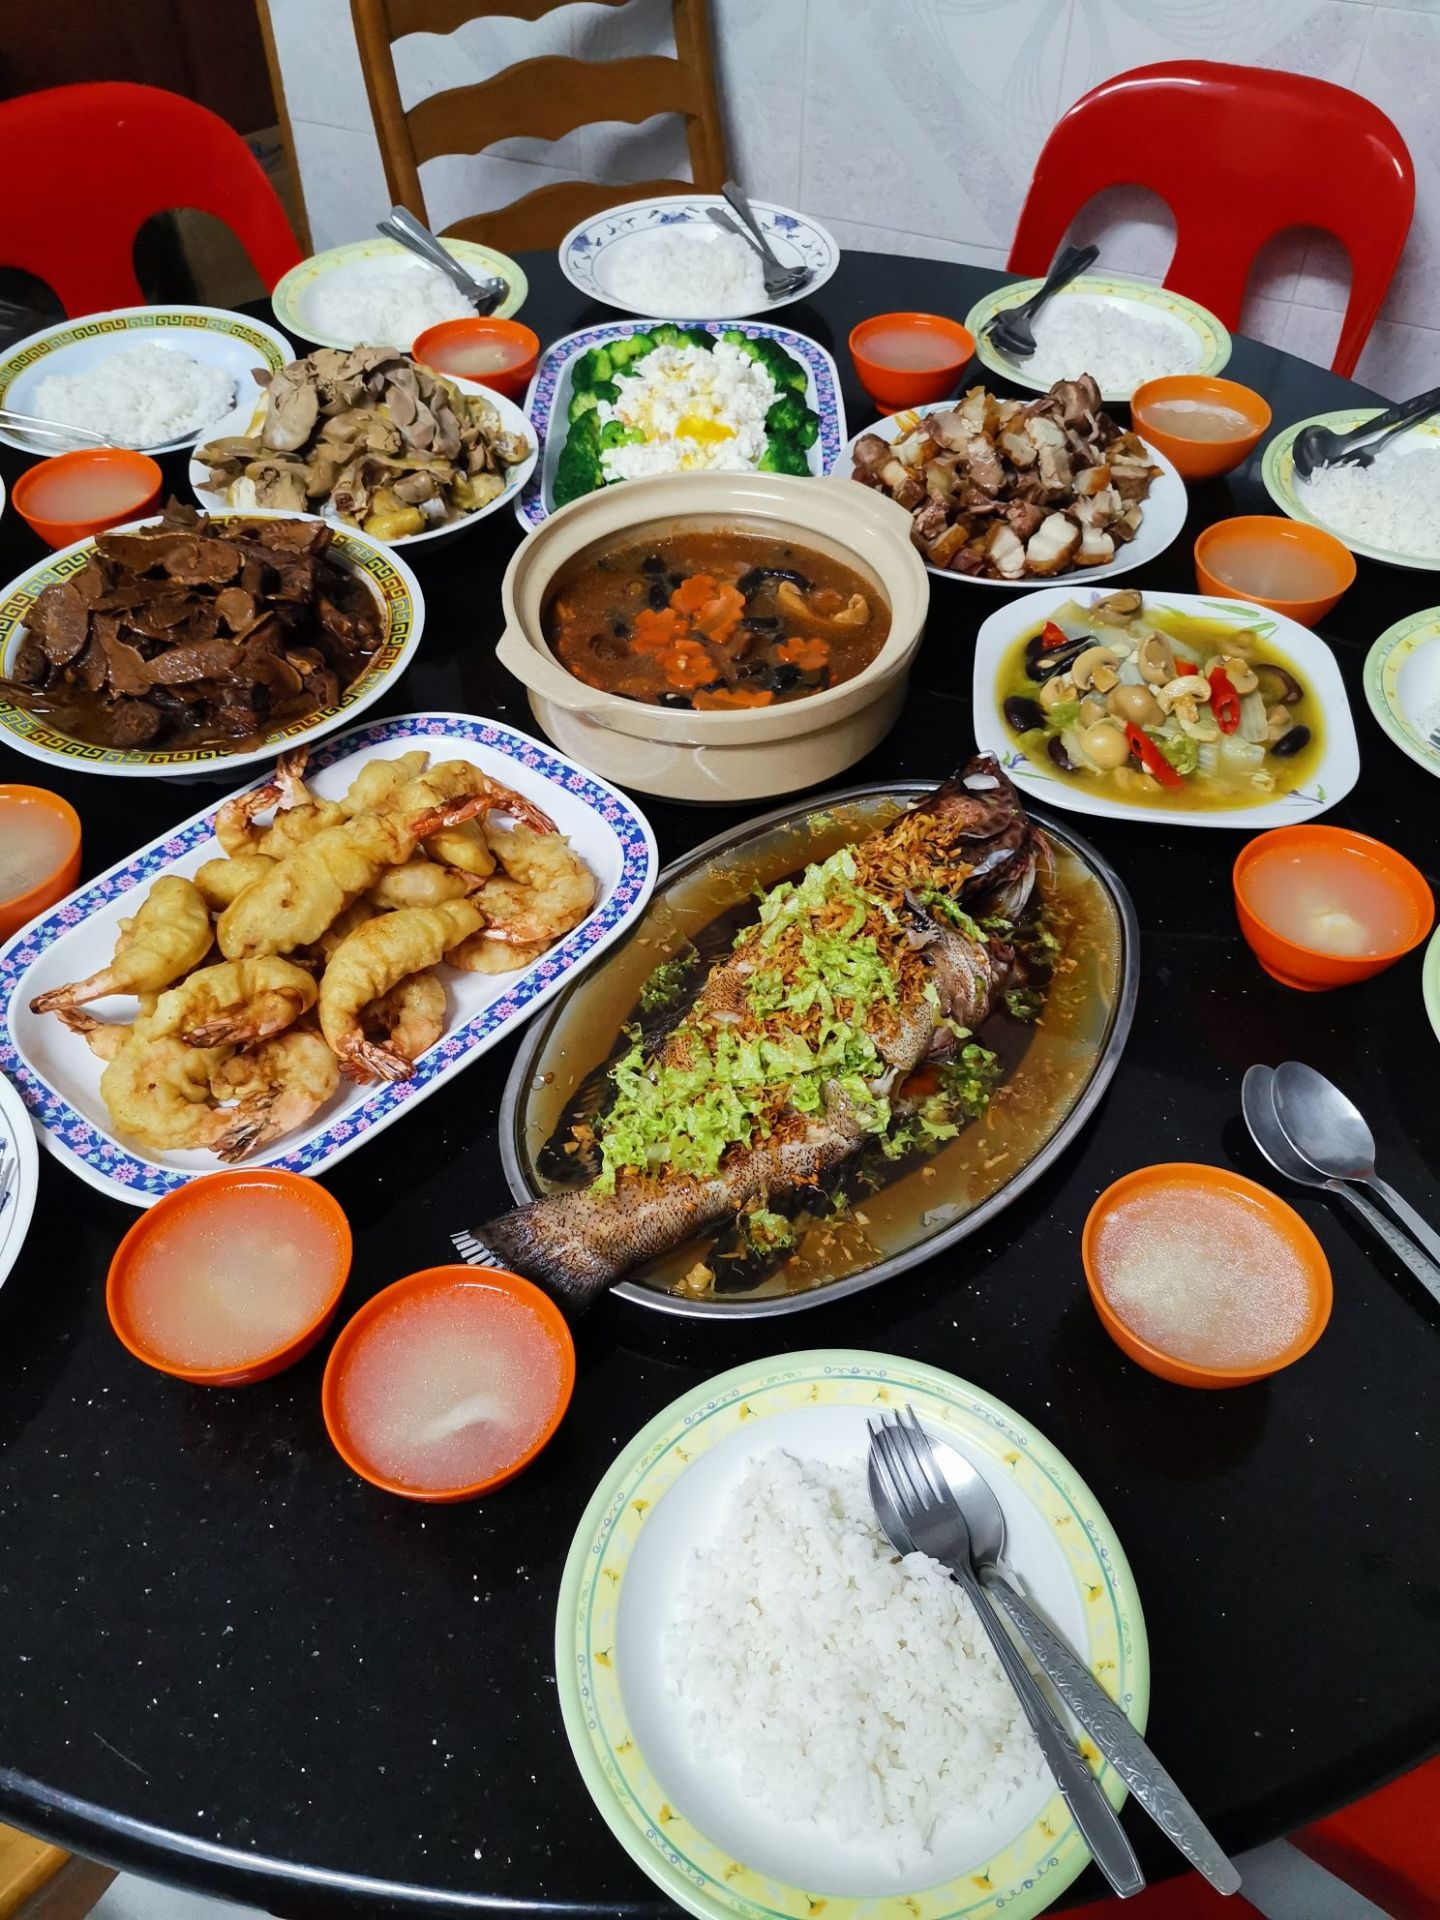 冬至在马来西亚华人朋友家里吃晚餐，口味偏粤式，味道很不错，非常感谢朋友的款待。马来西亚华人对华人文化